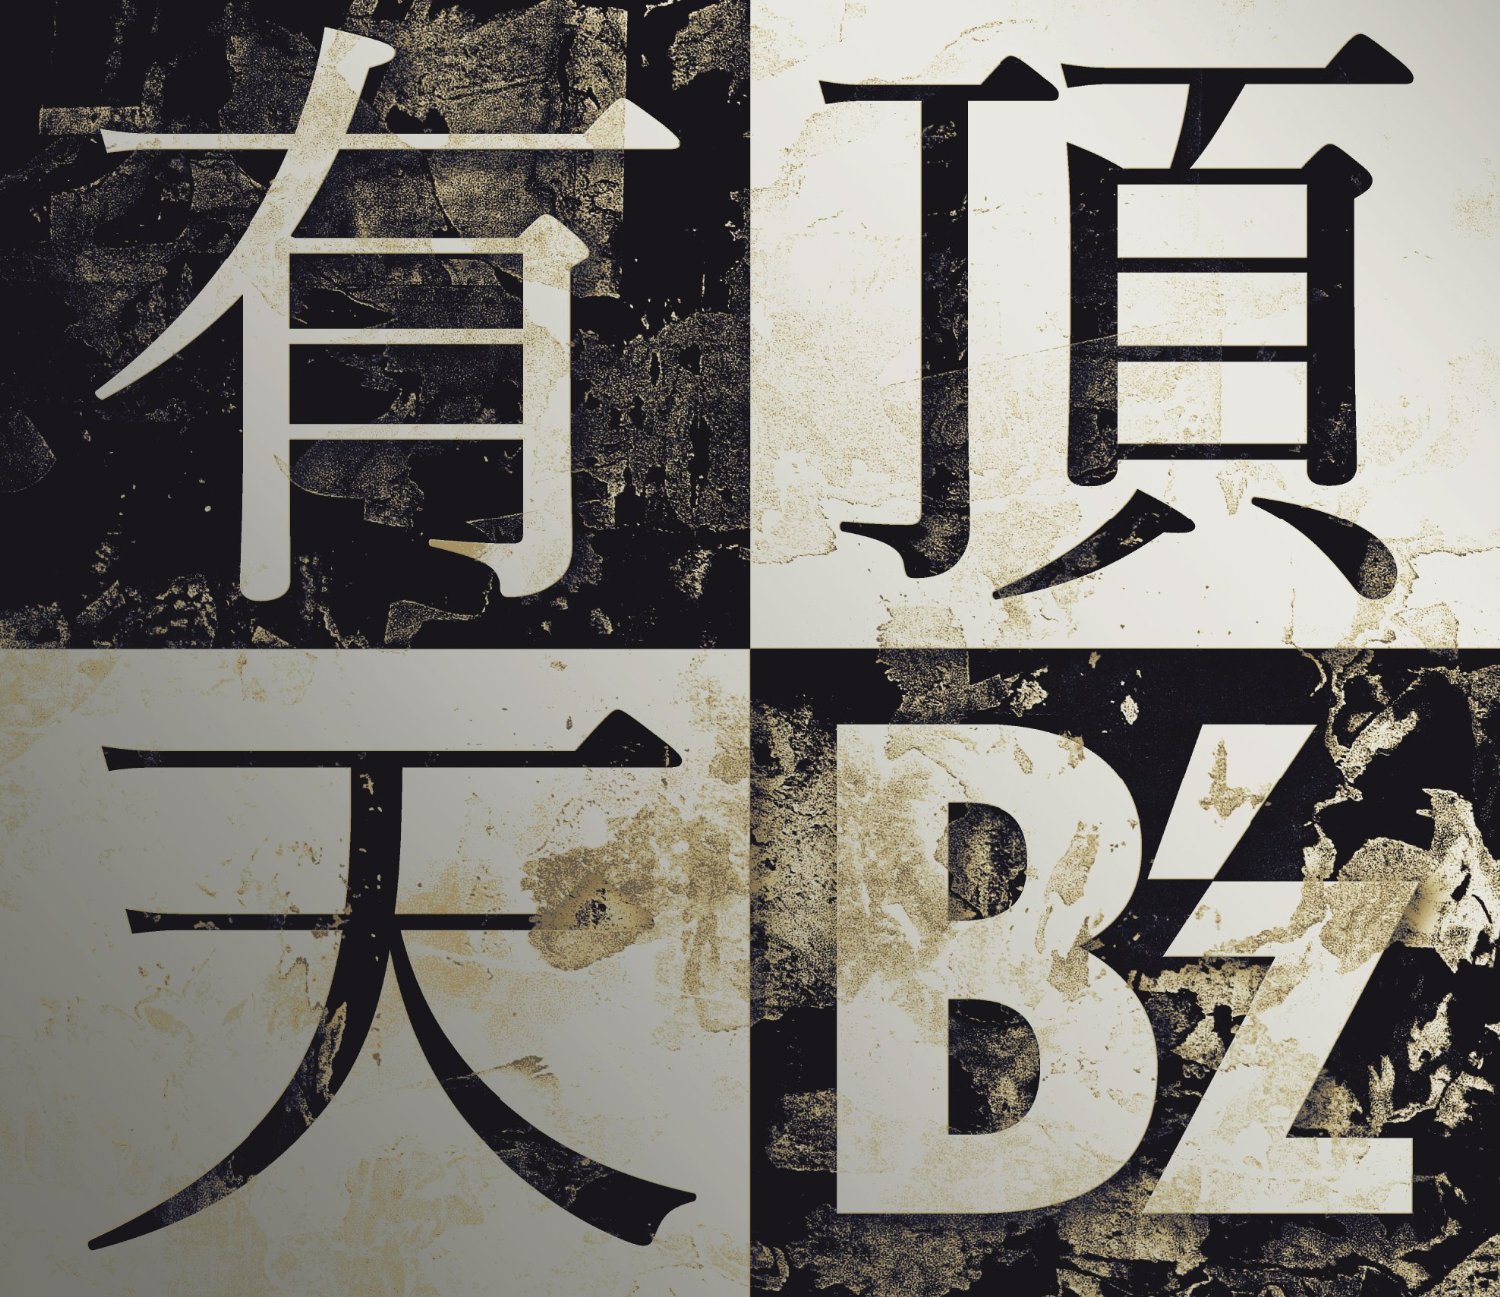 B'zが日テレのライブモンスターで新曲「有頂天」披露。そこで語られたB'zの意外な一面を紹介